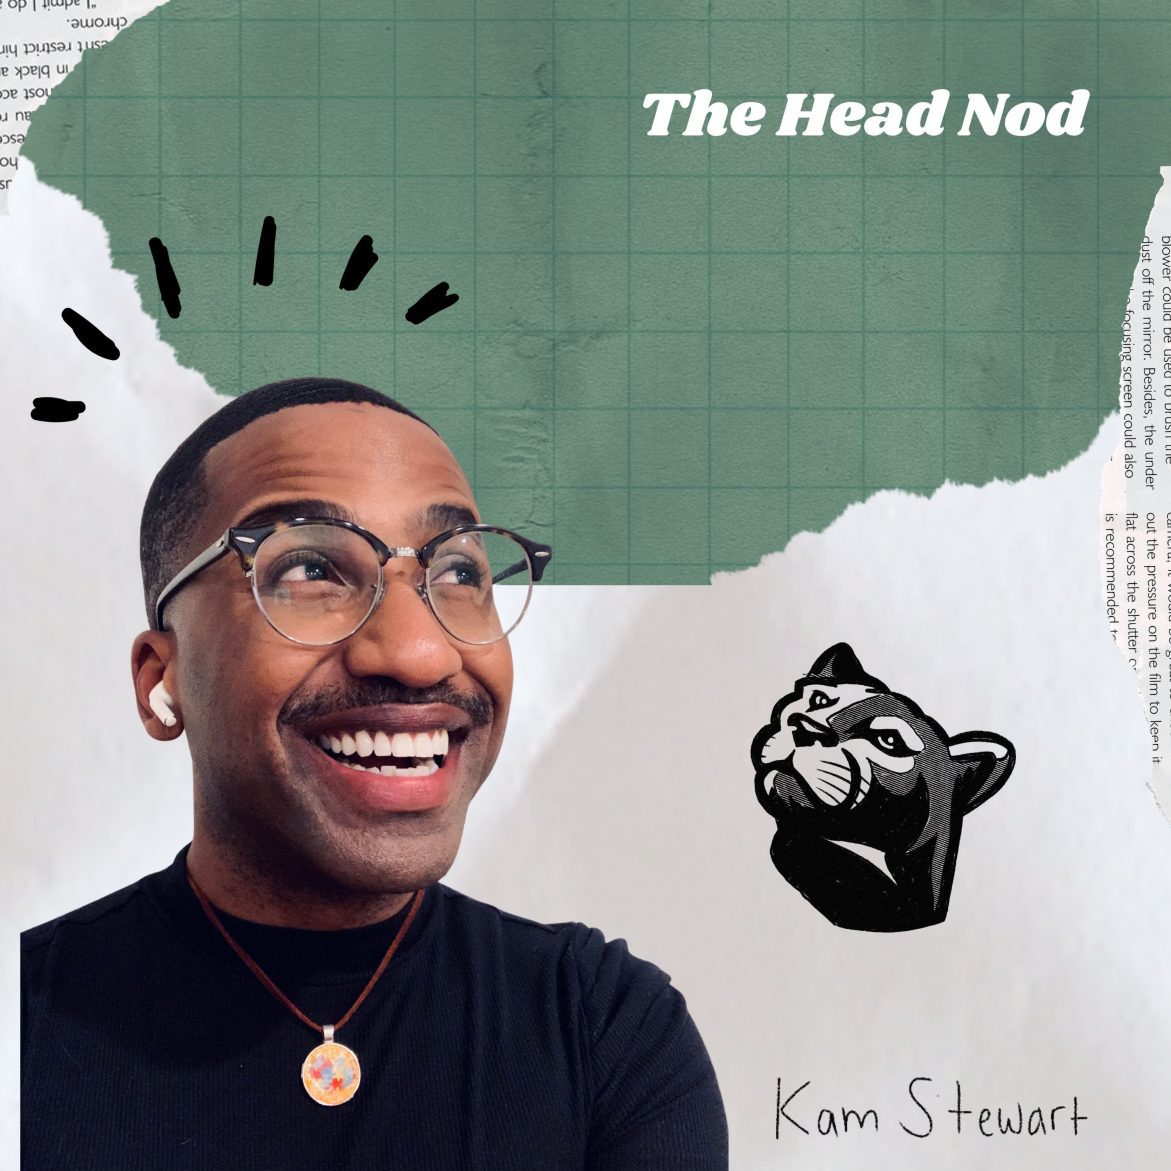 Black Podcasting - Trunk Ridin' Rocky Roads & Fittits - Penn State University & Seattle University